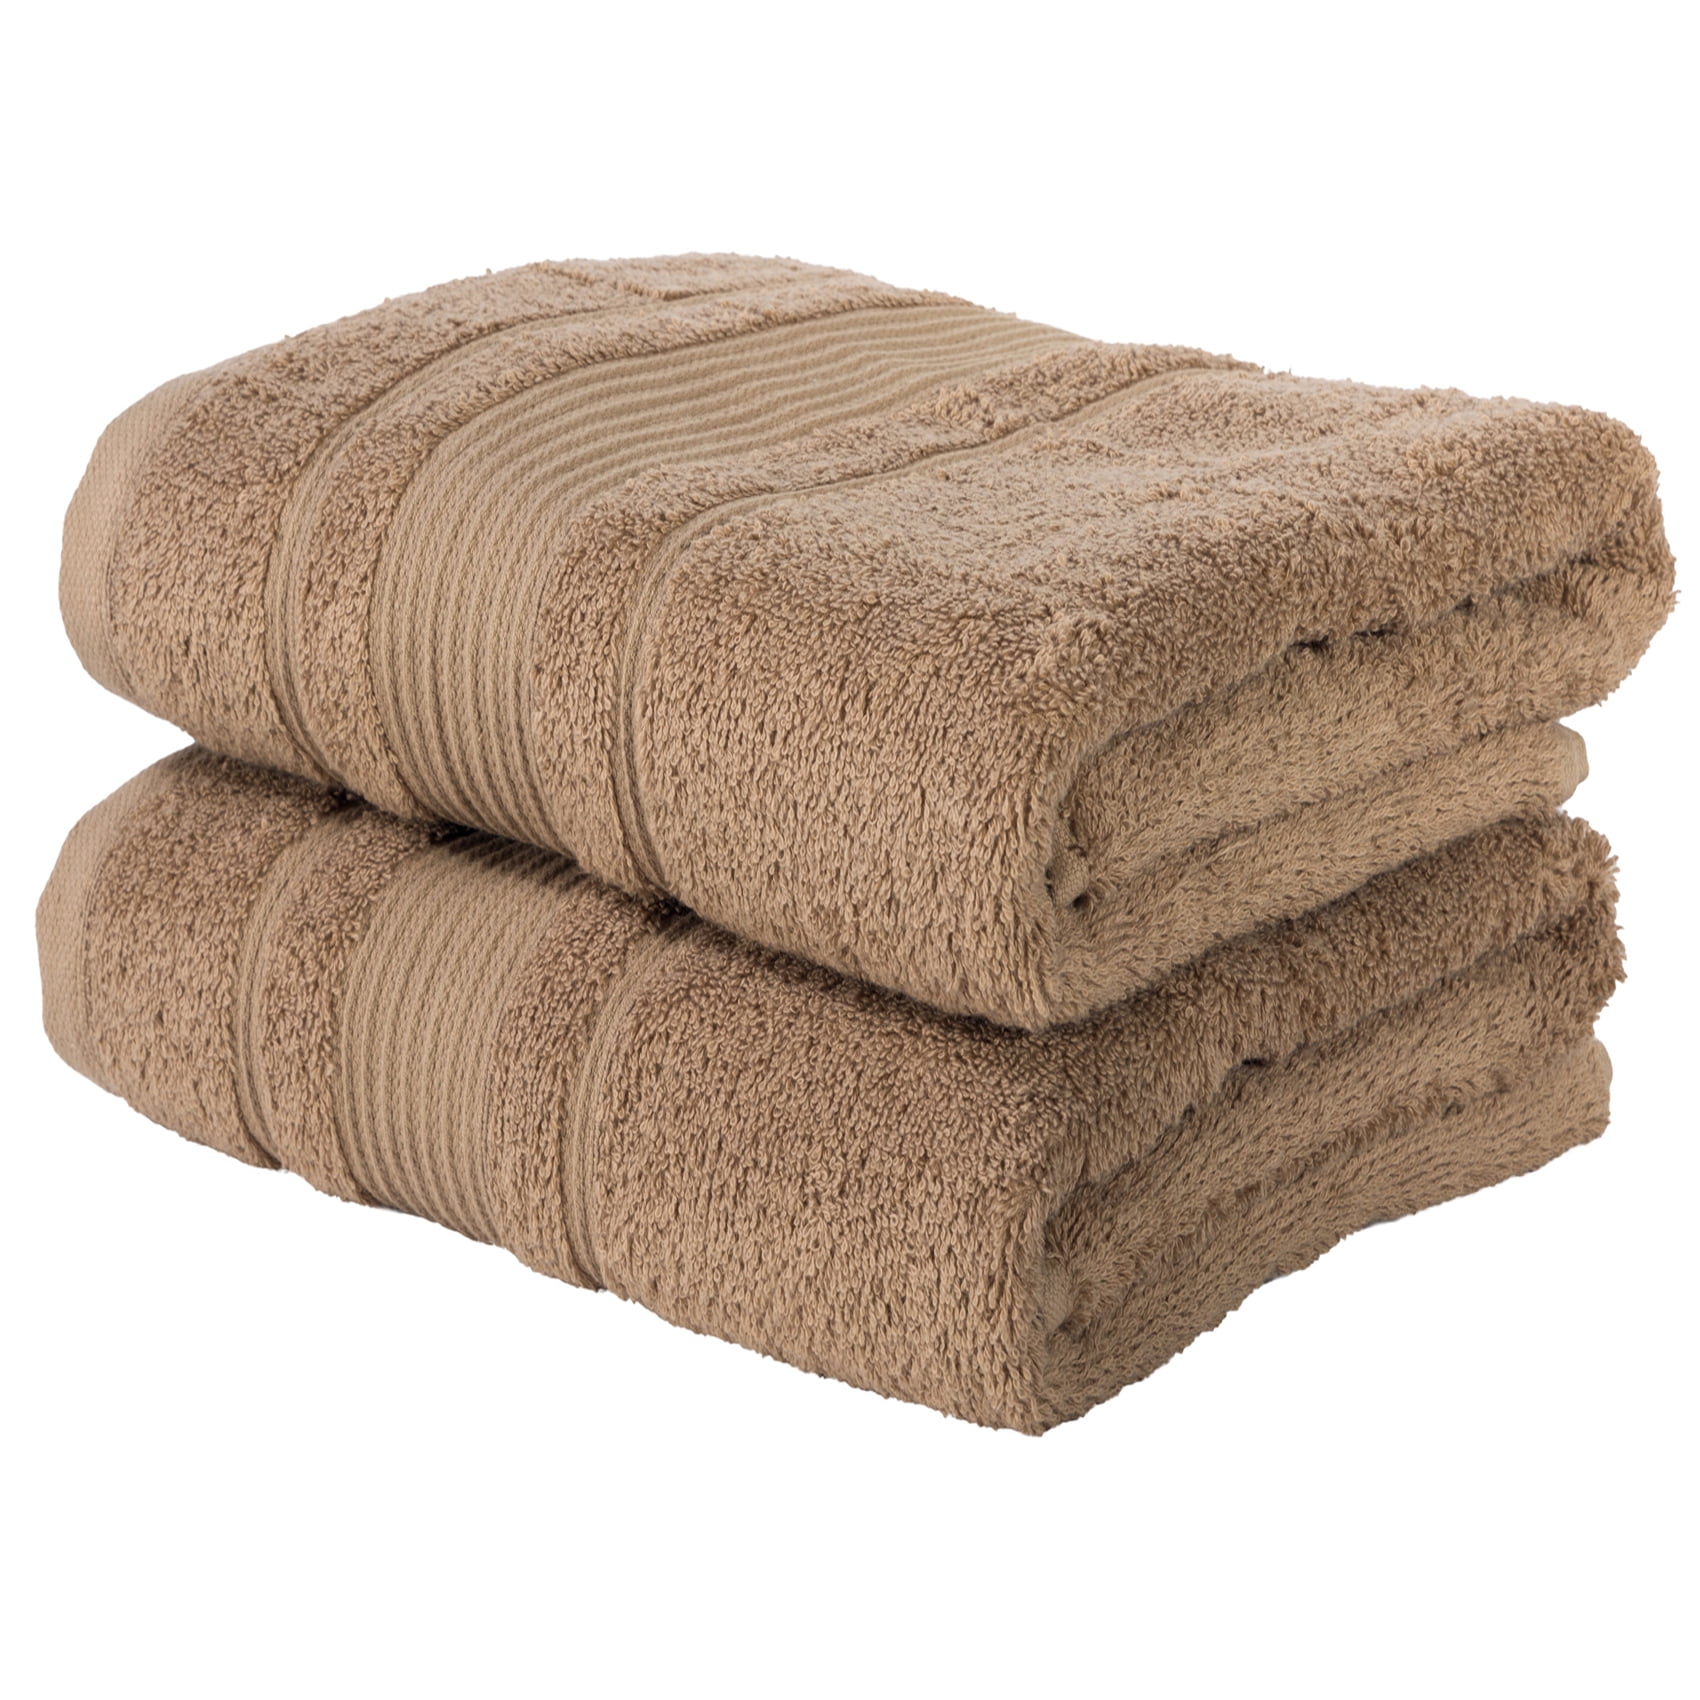 2 Piece Bath Towels  Set for Bathroom Spa Hotel Quality 